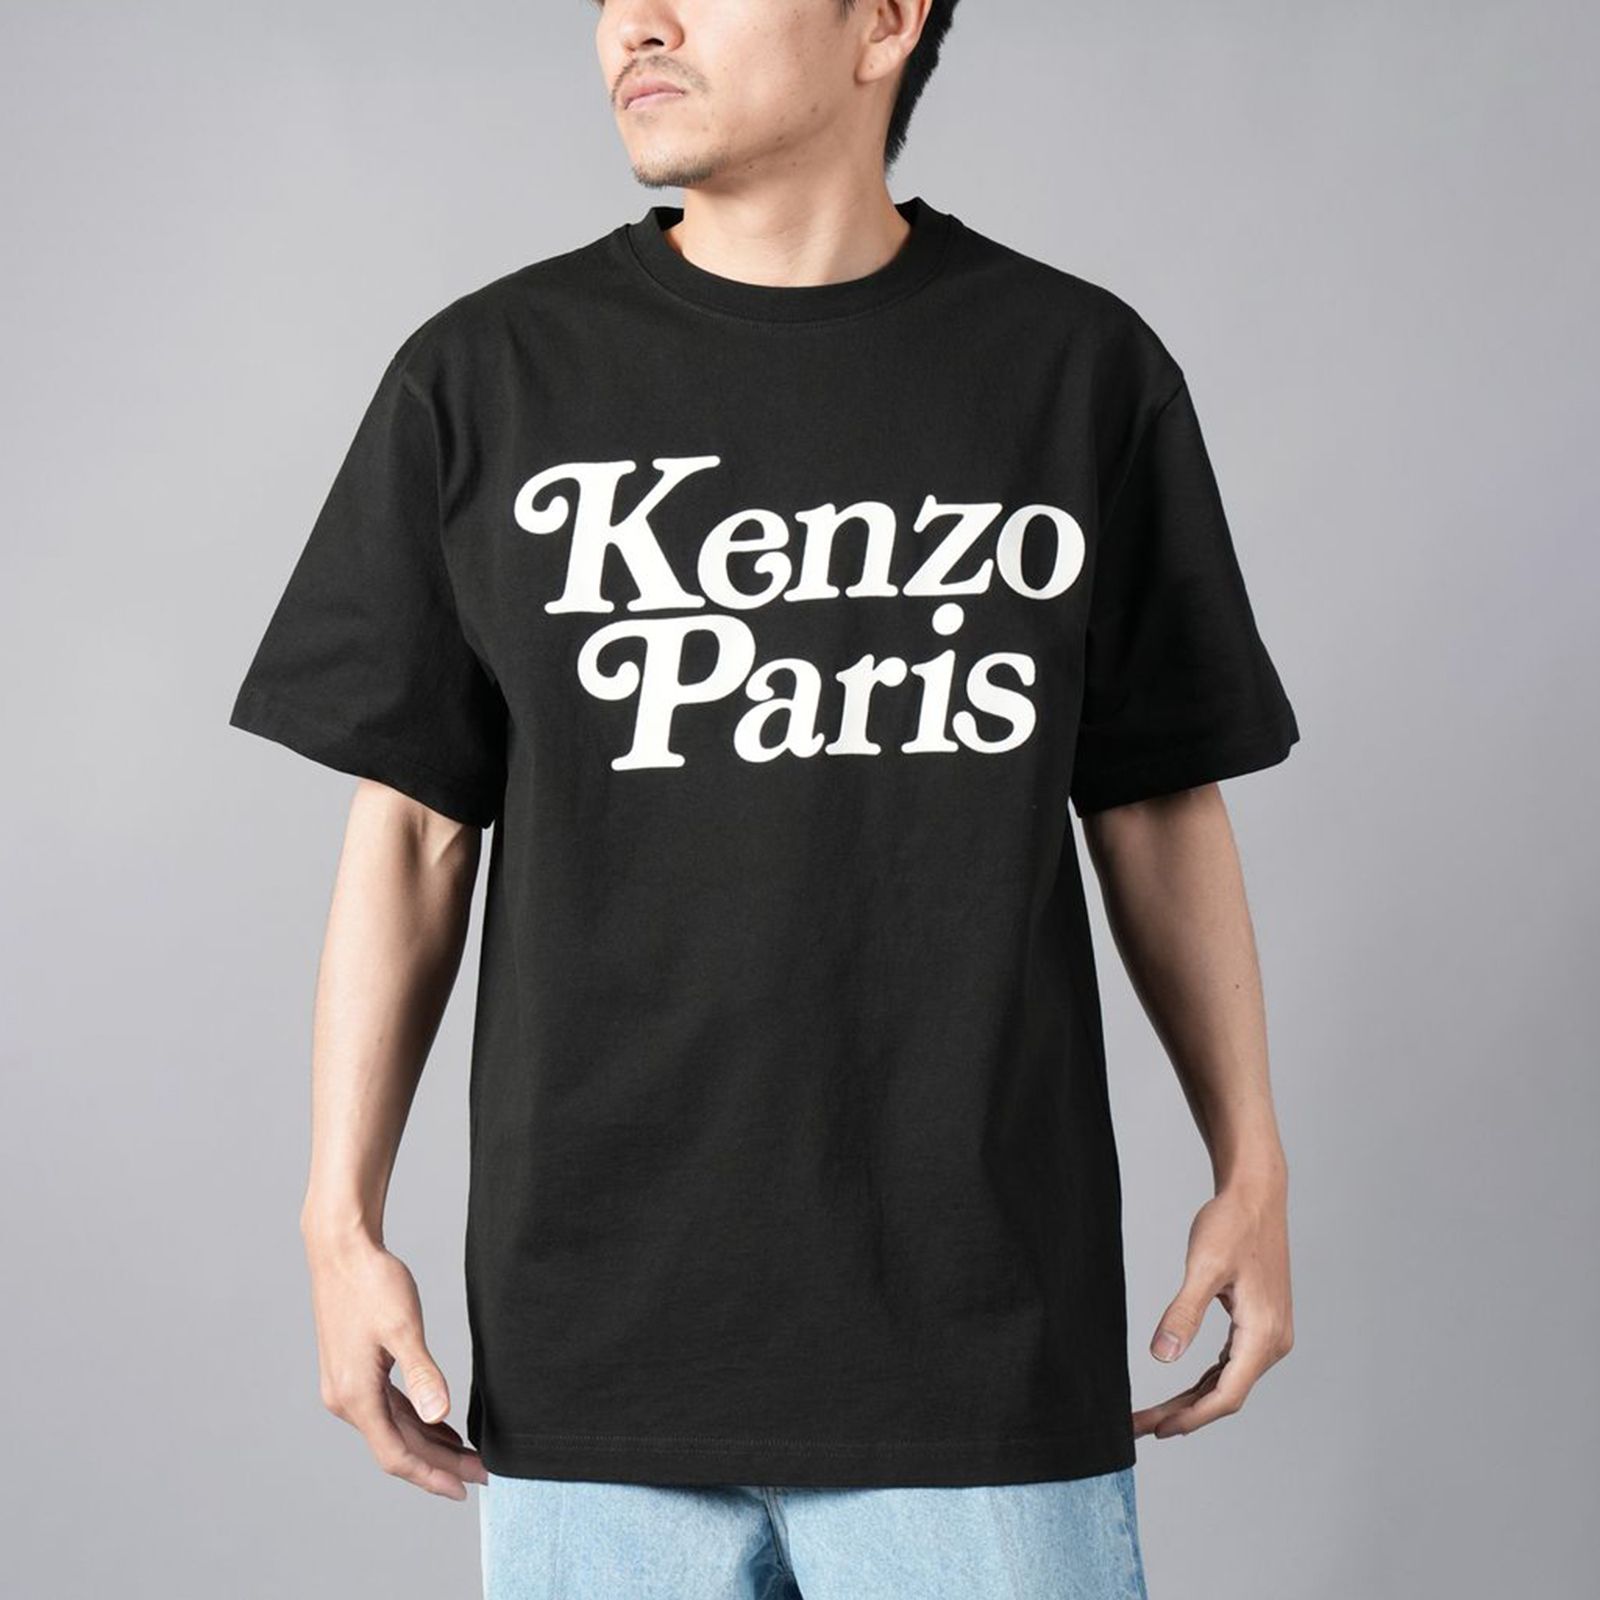 KENZO - 【再入荷】【限定】 KENZO x VERDY / KENZO BY VERDY 